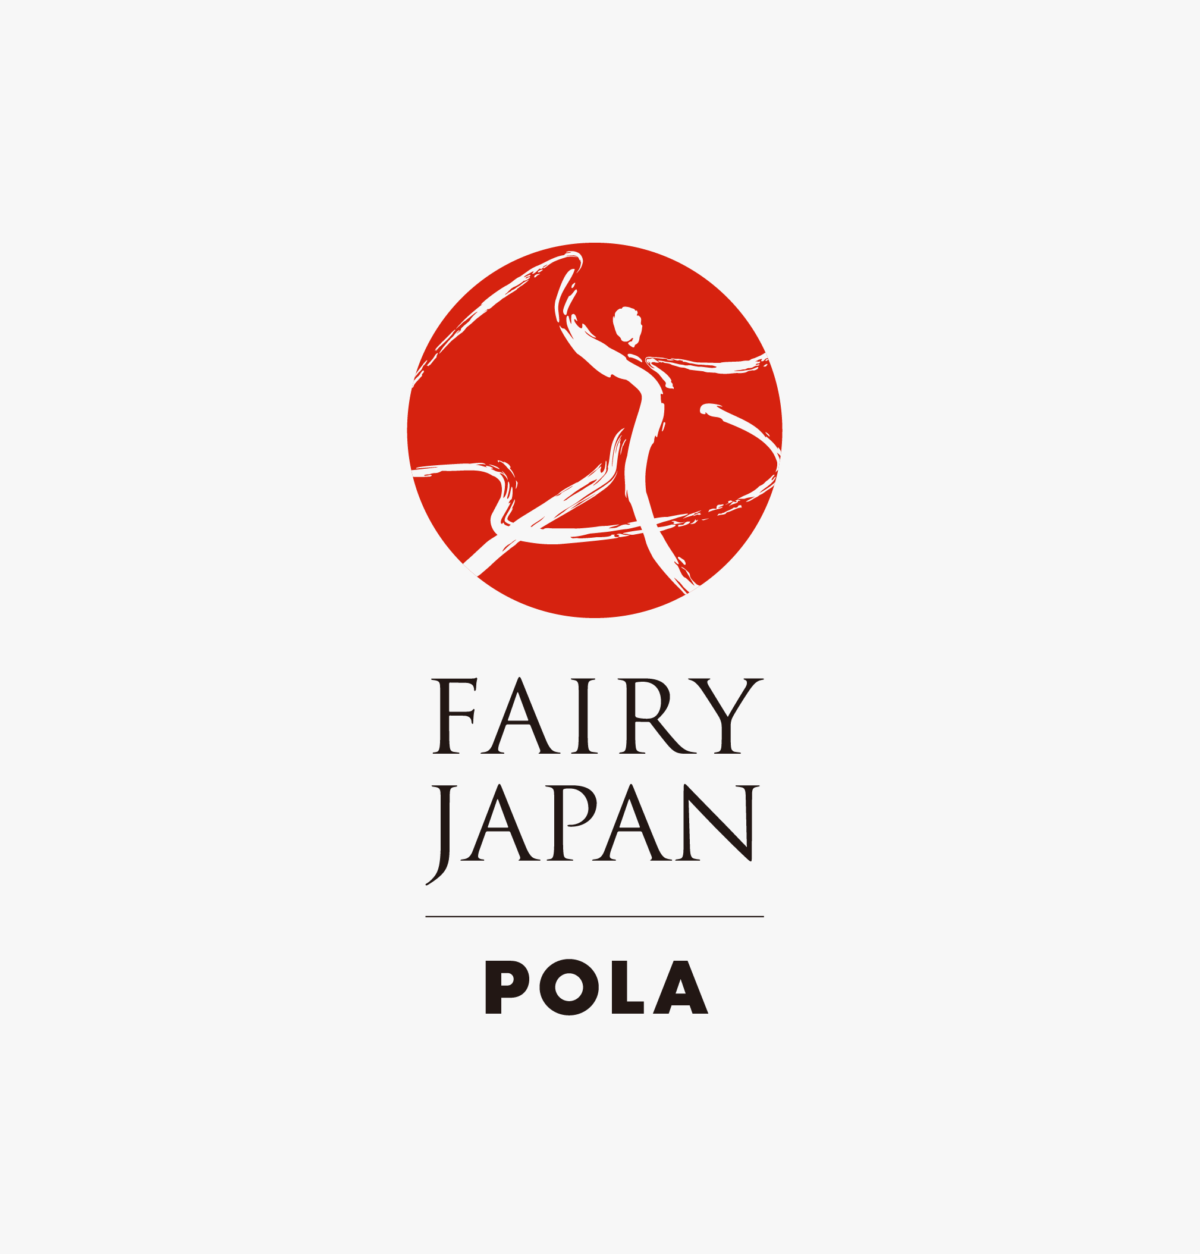 FAIRY JAPAN POLA